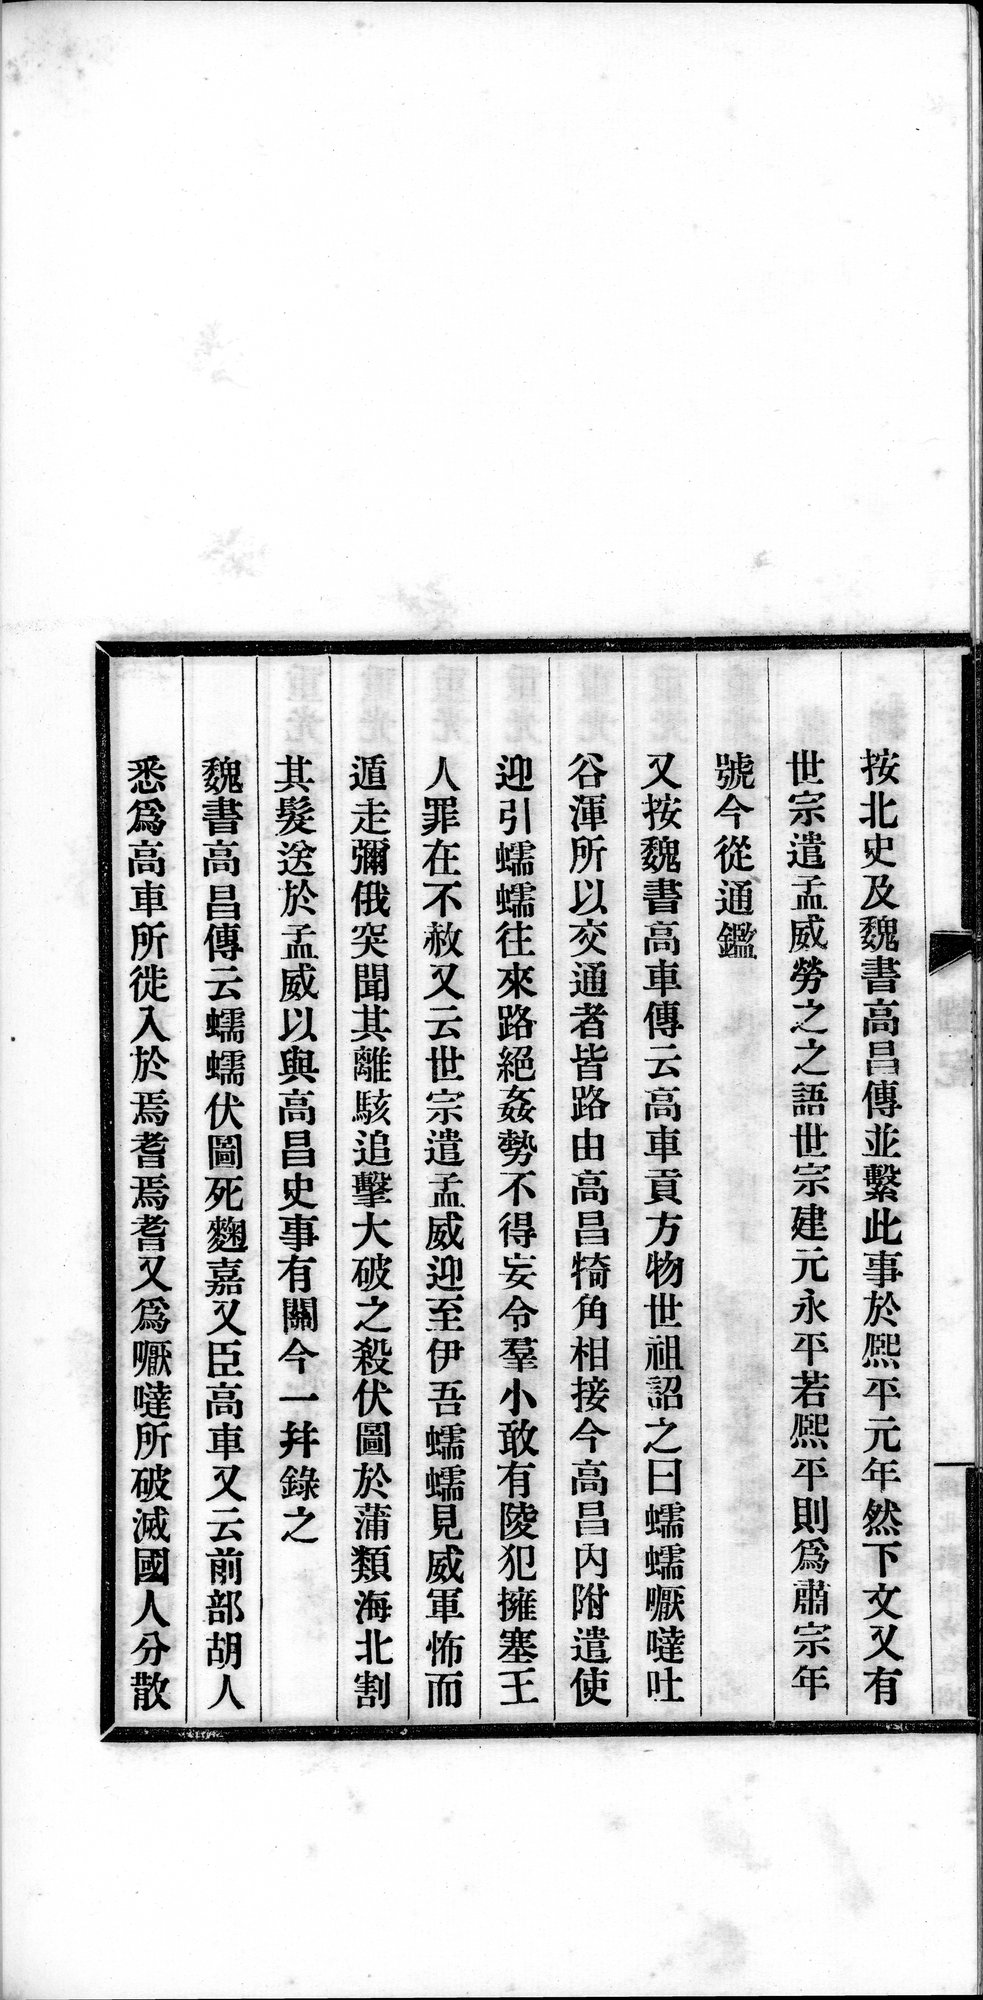 高昌 : vol.1 / Page 32 (Grayscale High Resolution Image)